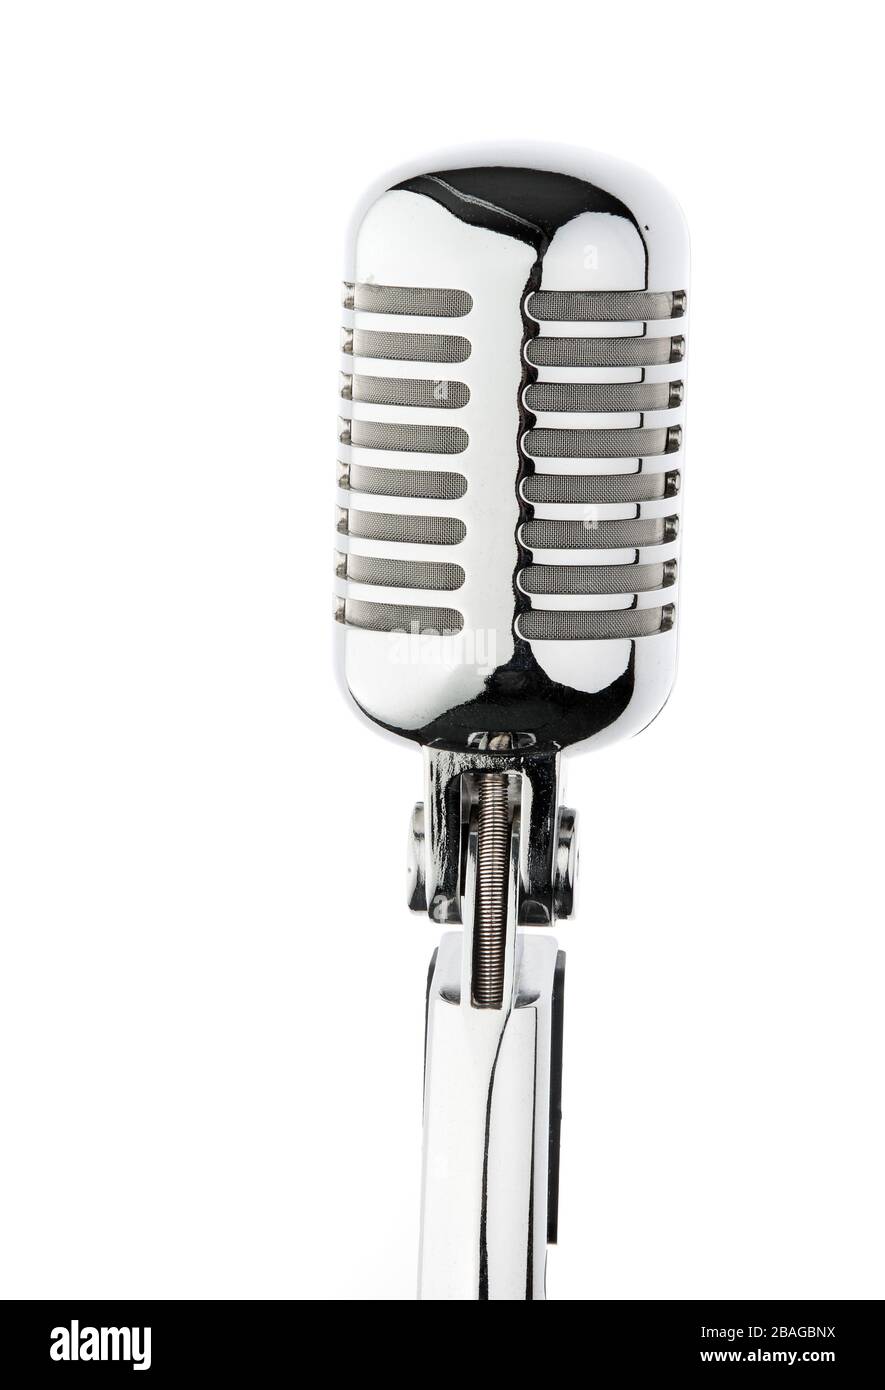 Ein verchromtes Mikrofon für Reden, Ansprachen, Karaoke und Musik, Stock Photo